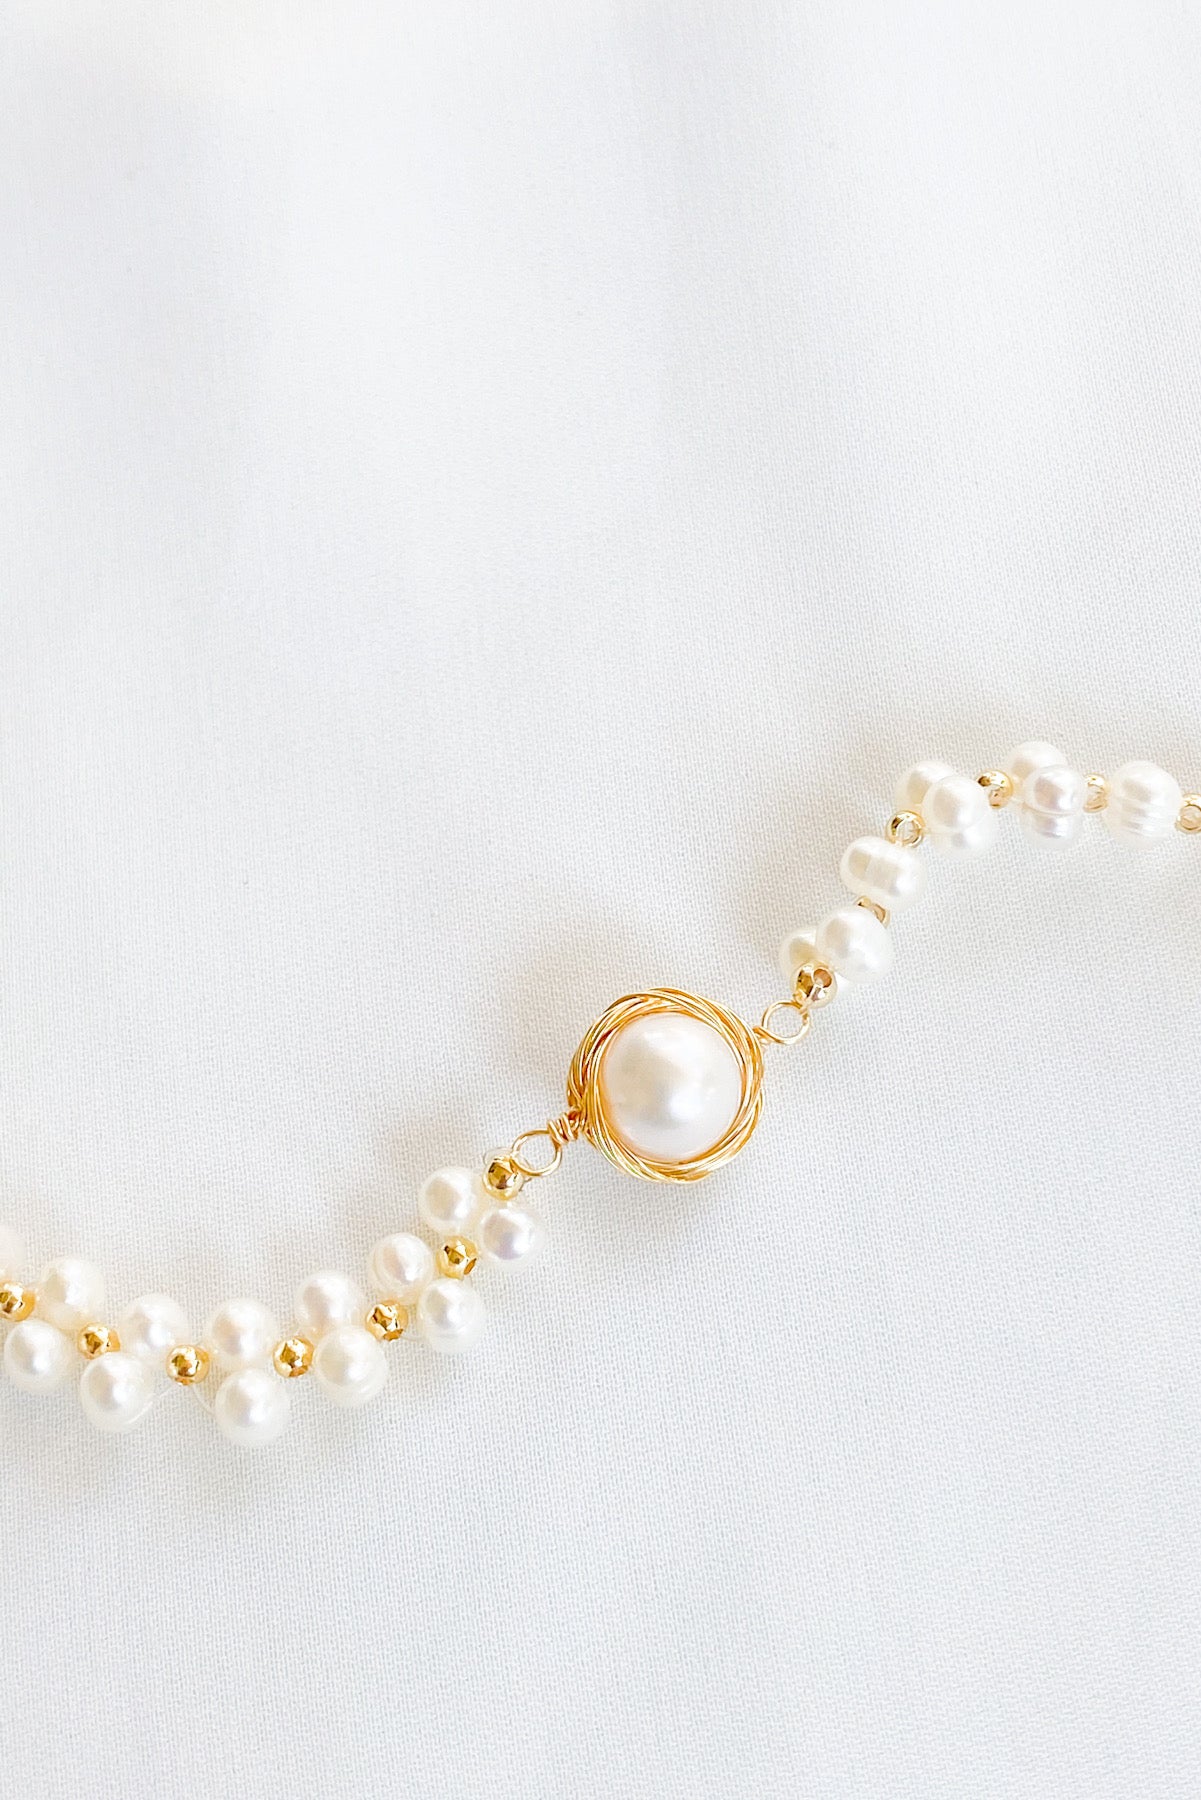 Pearl Bracelets | Shop Designer Pearl Bracelets for Women - ALOR